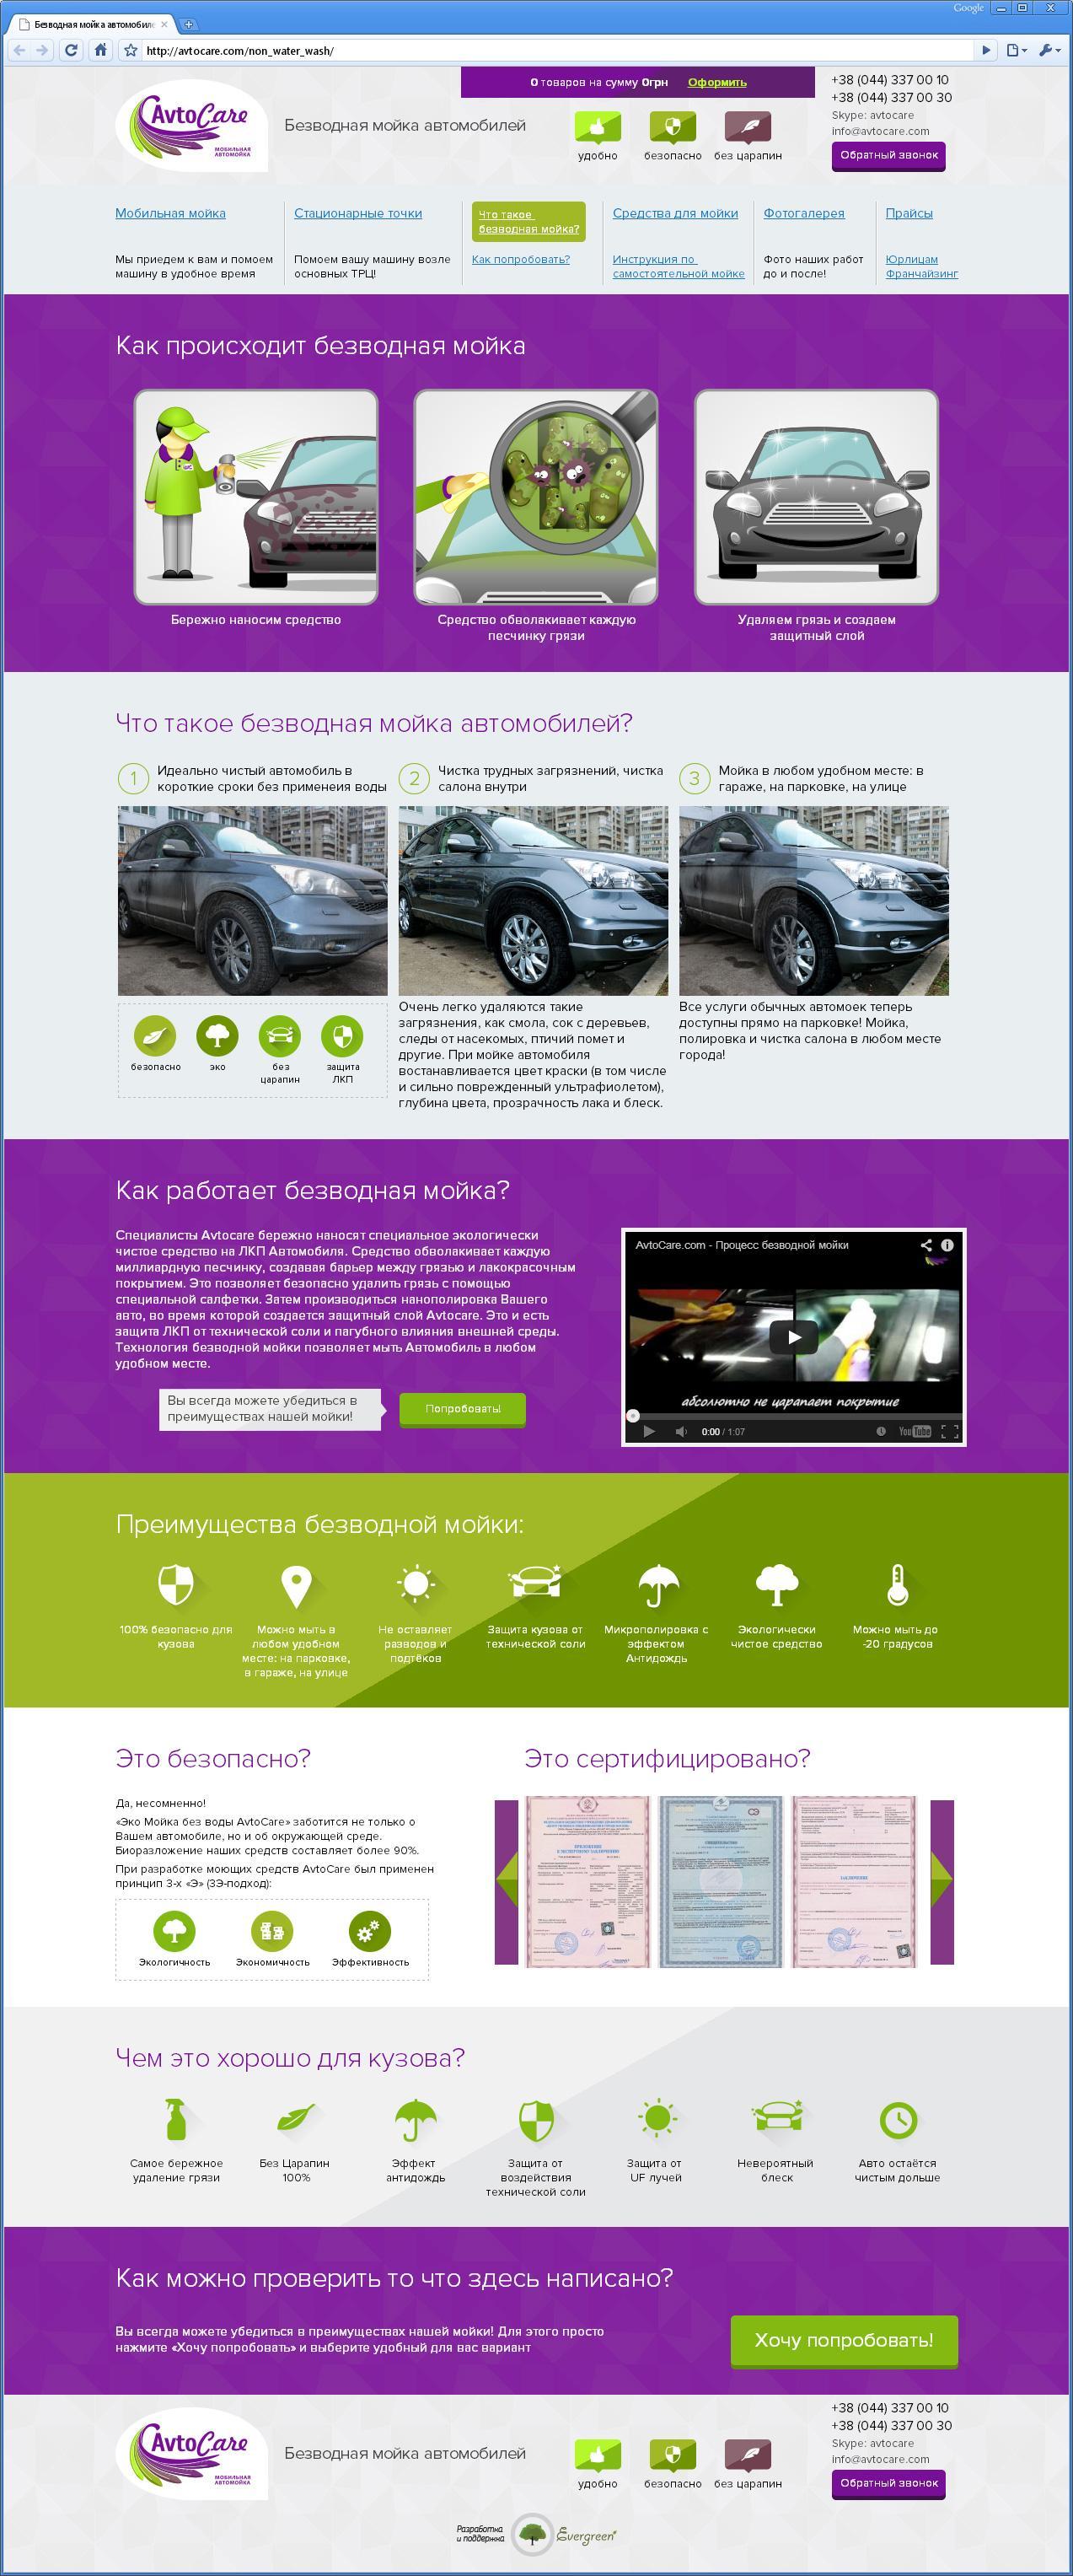 Сайт компании, продвигающей новую для украинского рынка технологию - безводную мойки авто | проекты Evergreen 12